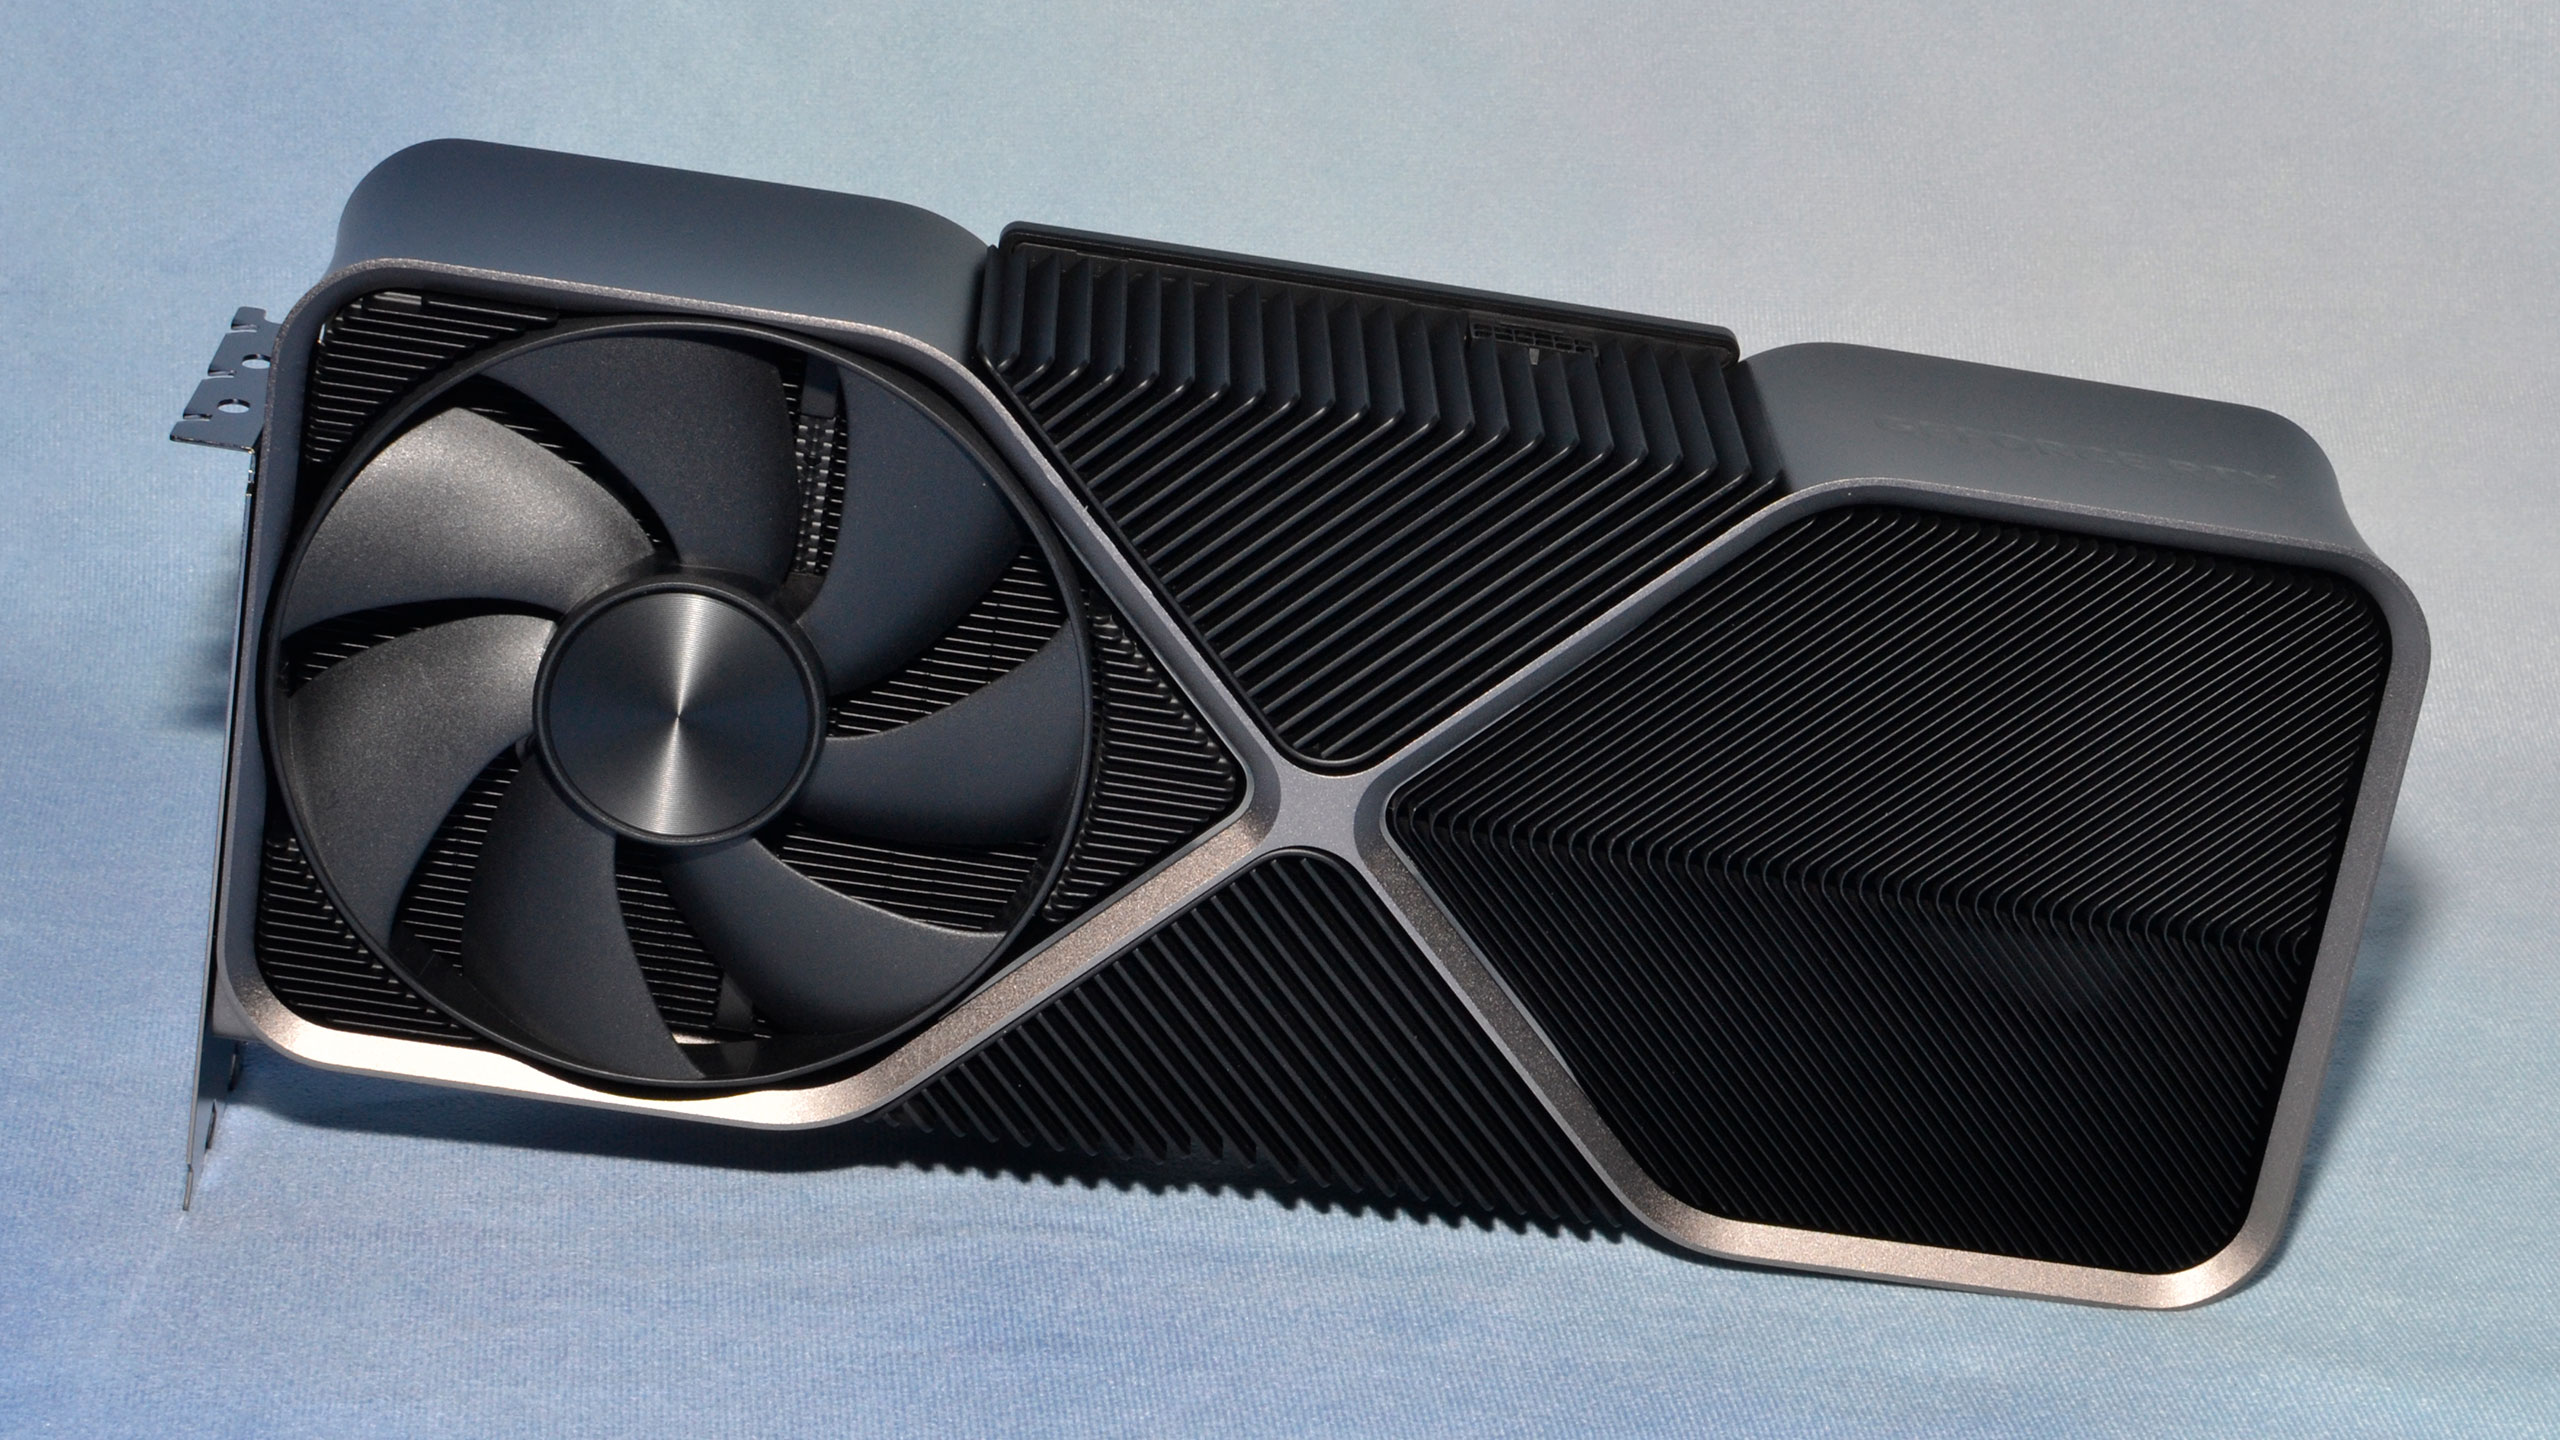 NVIDIA GeForce RTX 4080 jest znacznie szybszy i bardziej energooszczędny od GeForce RTX 3080 - opublikowano pierwsze recenzje karty graficznej za 1199 dolarów